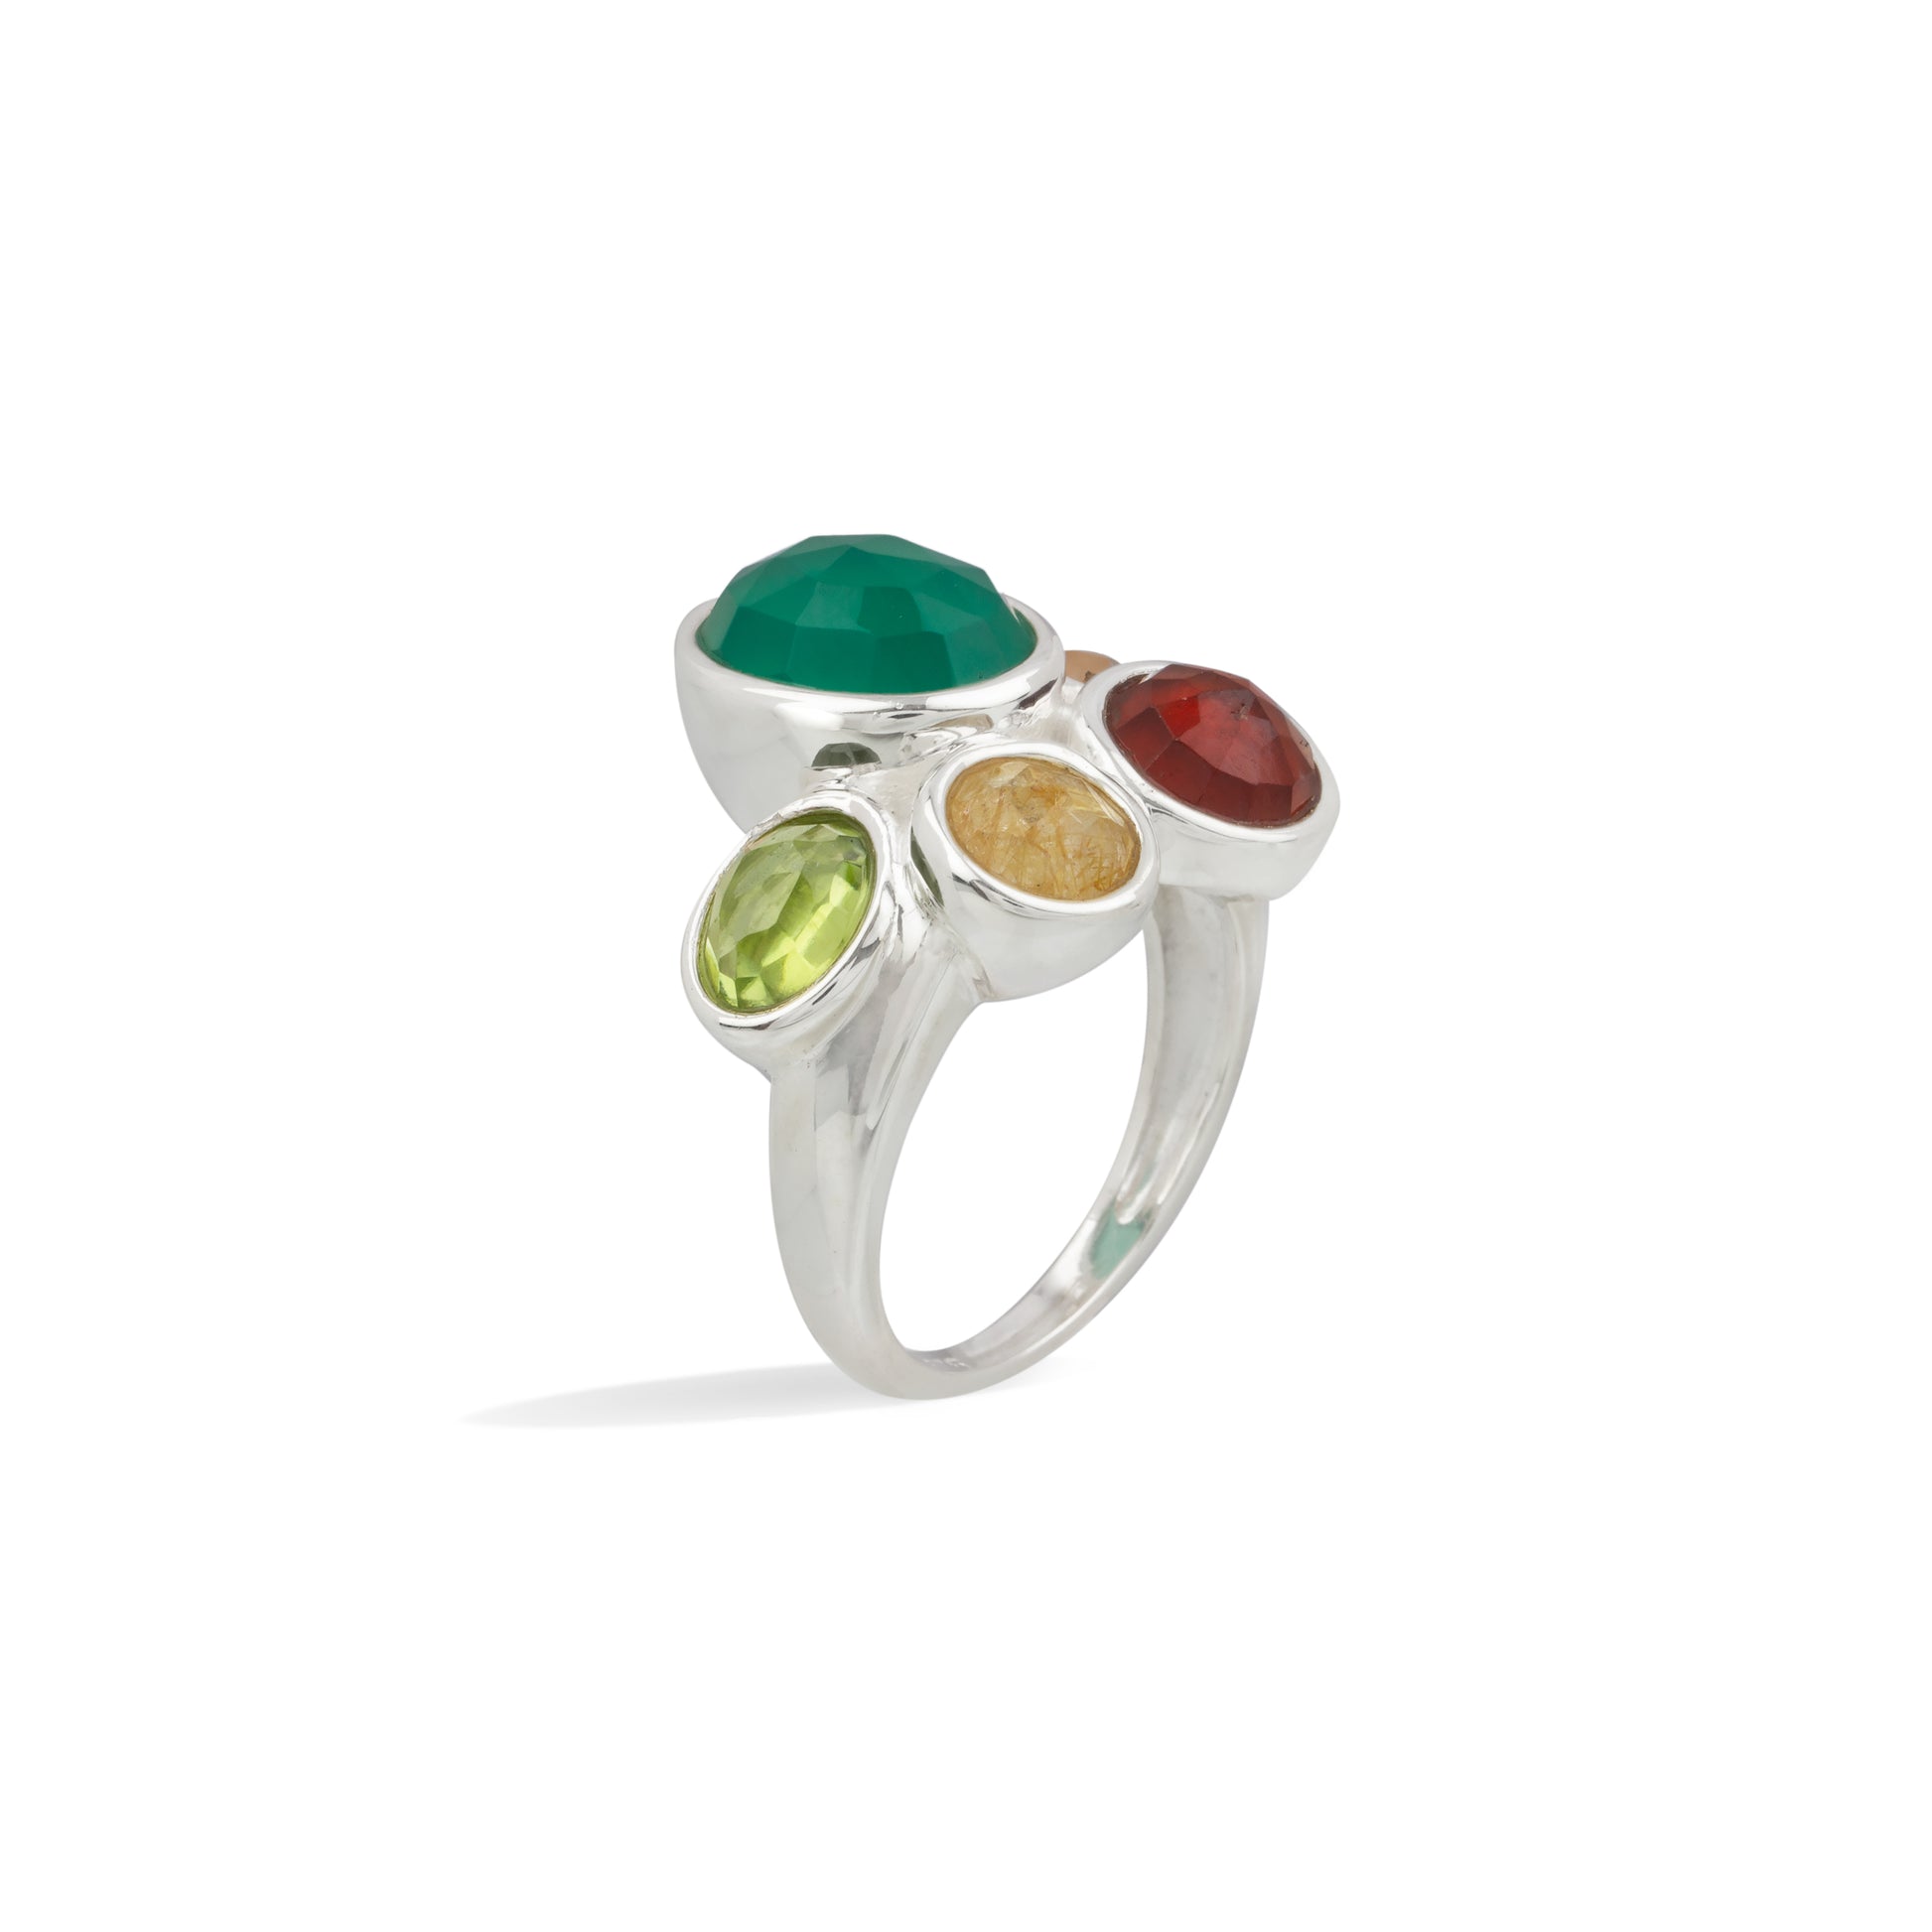 Diva Drop- Multi semi precious stone ring handcrafted.